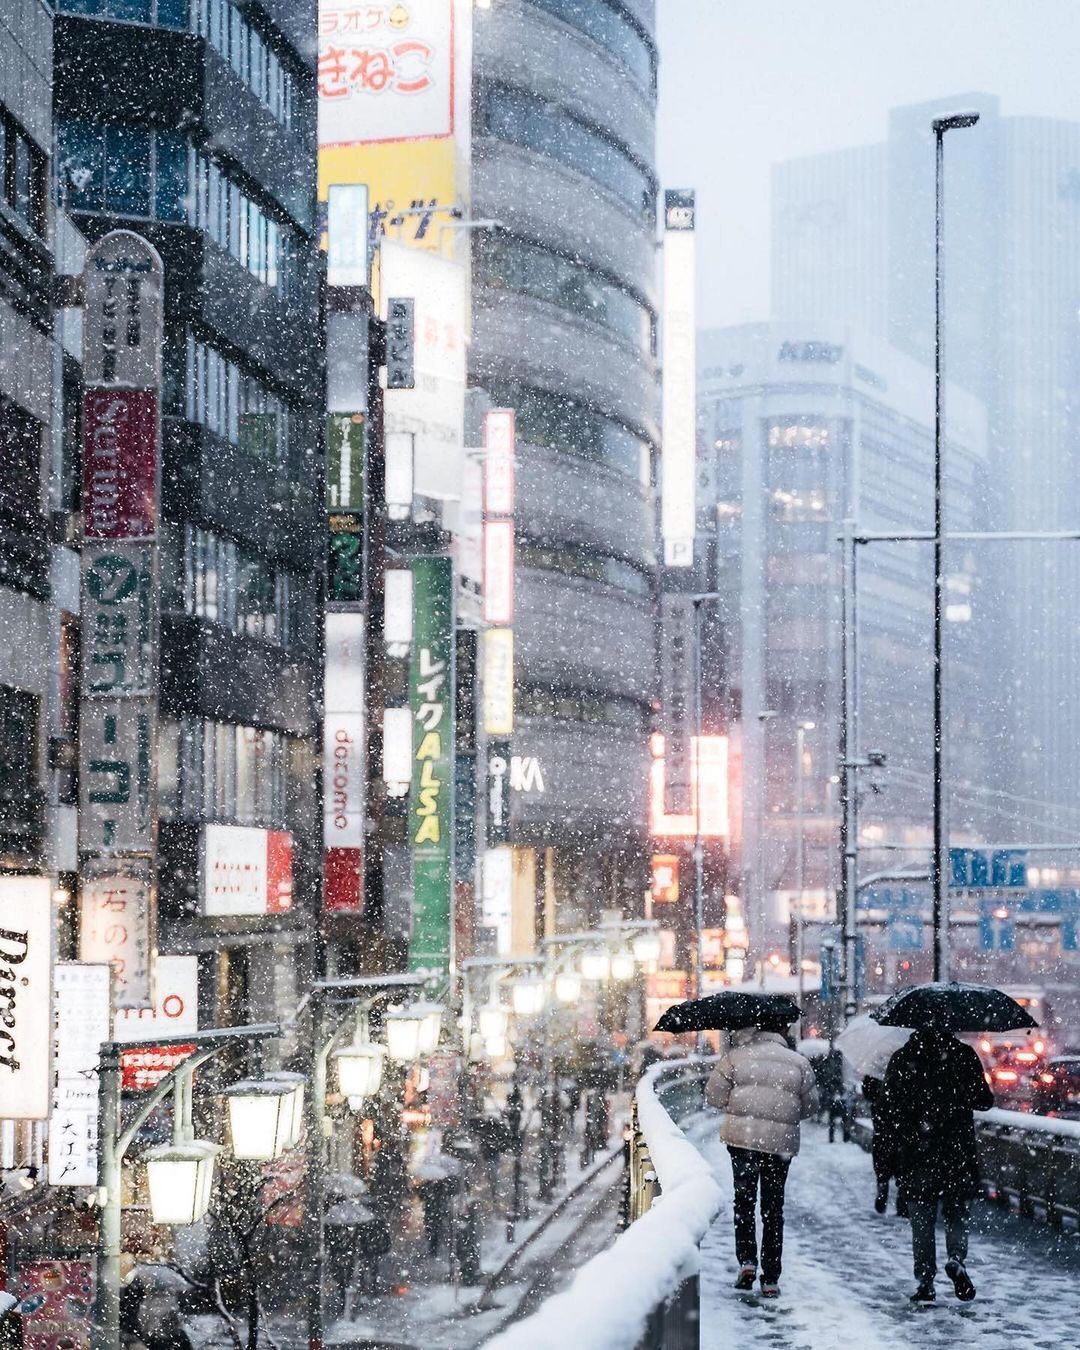 Nhìn Tokyo từ trên cao, bạn sẽ thấy một hình ảnh tuyết trắng tuyệt đẹp bao phủ lên khắp thành phố. Đây là một cảnh tượng không thể thiếu khi đến Tokyo vào mùa đông. Hãy xem hình ảnh để cảm nhận được vẻ đẹp độc đáo này.